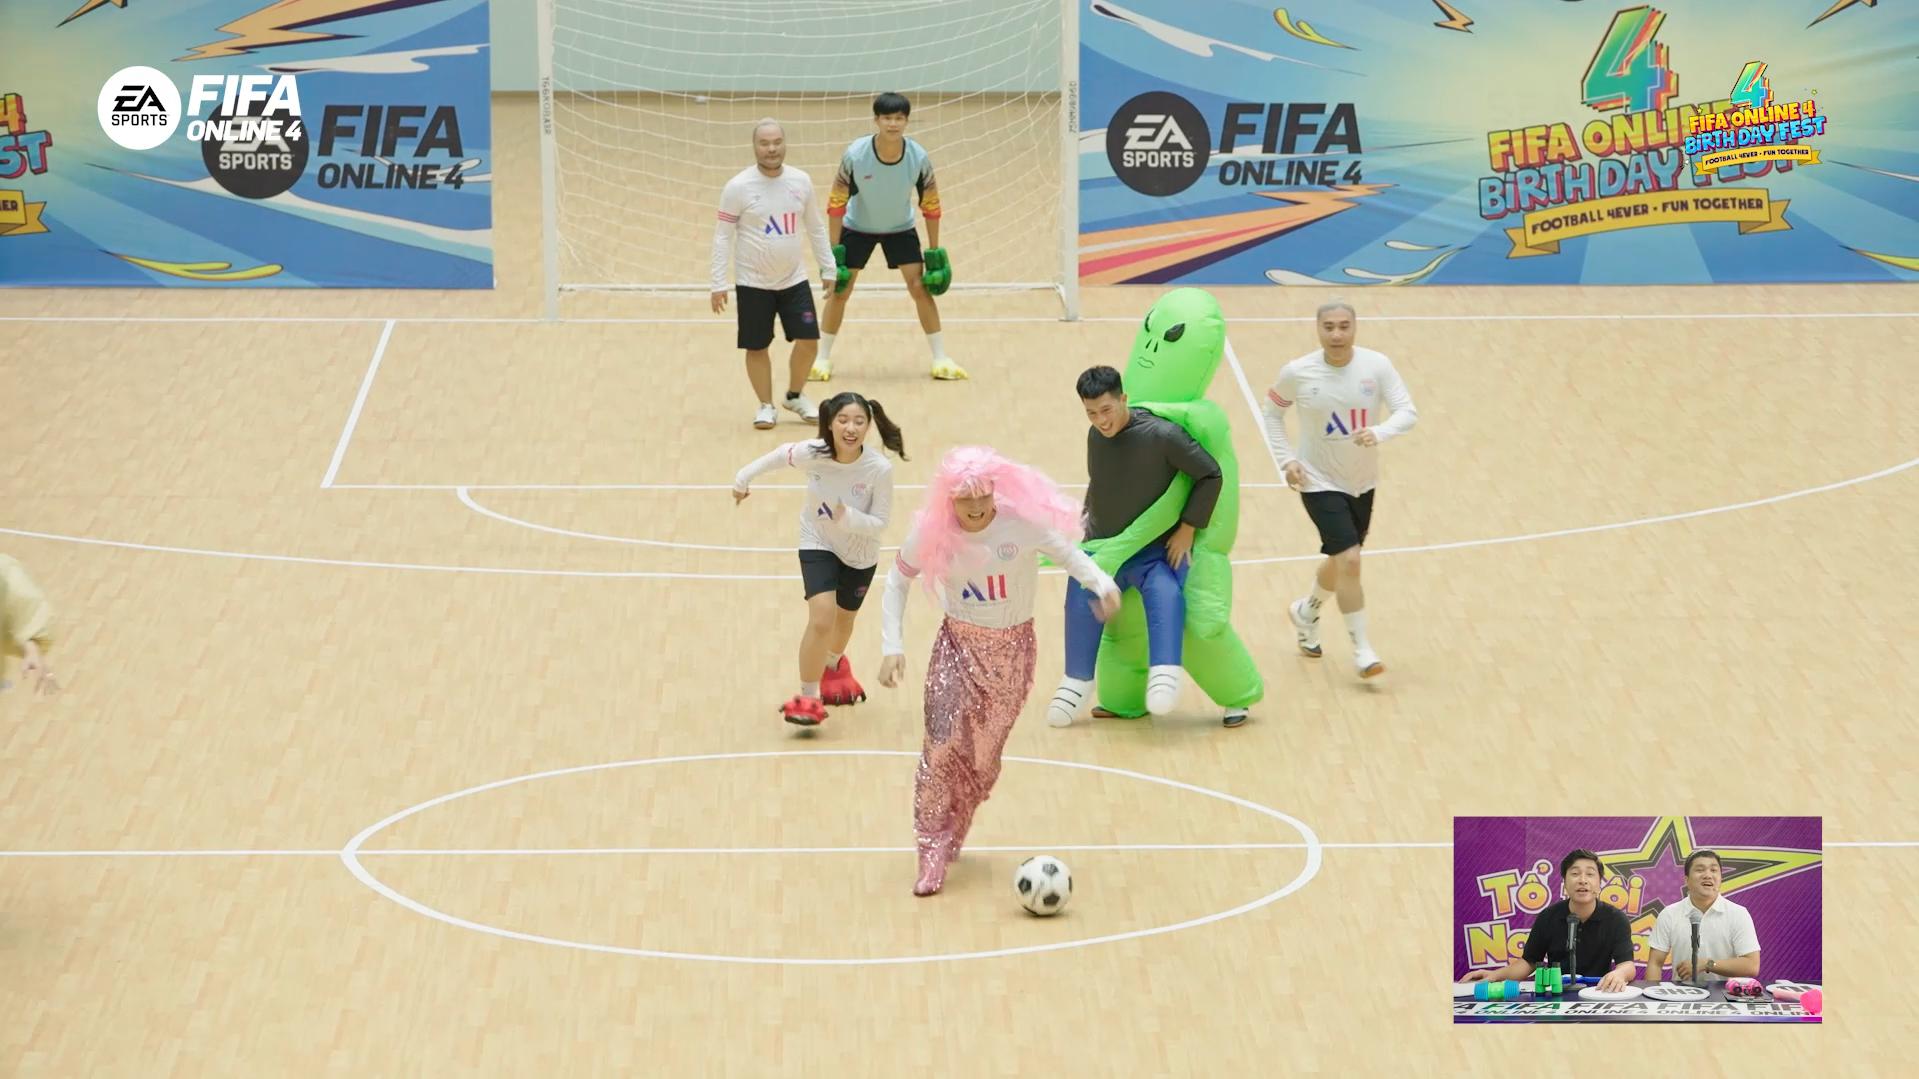 Độ Mixi, Đình Trọng đả bại Vinh Râu, Tiến Dũng trong Gameshow thực tế mừng sinh nhật FIFA Online 4 Birthday Fest - Ảnh 7.